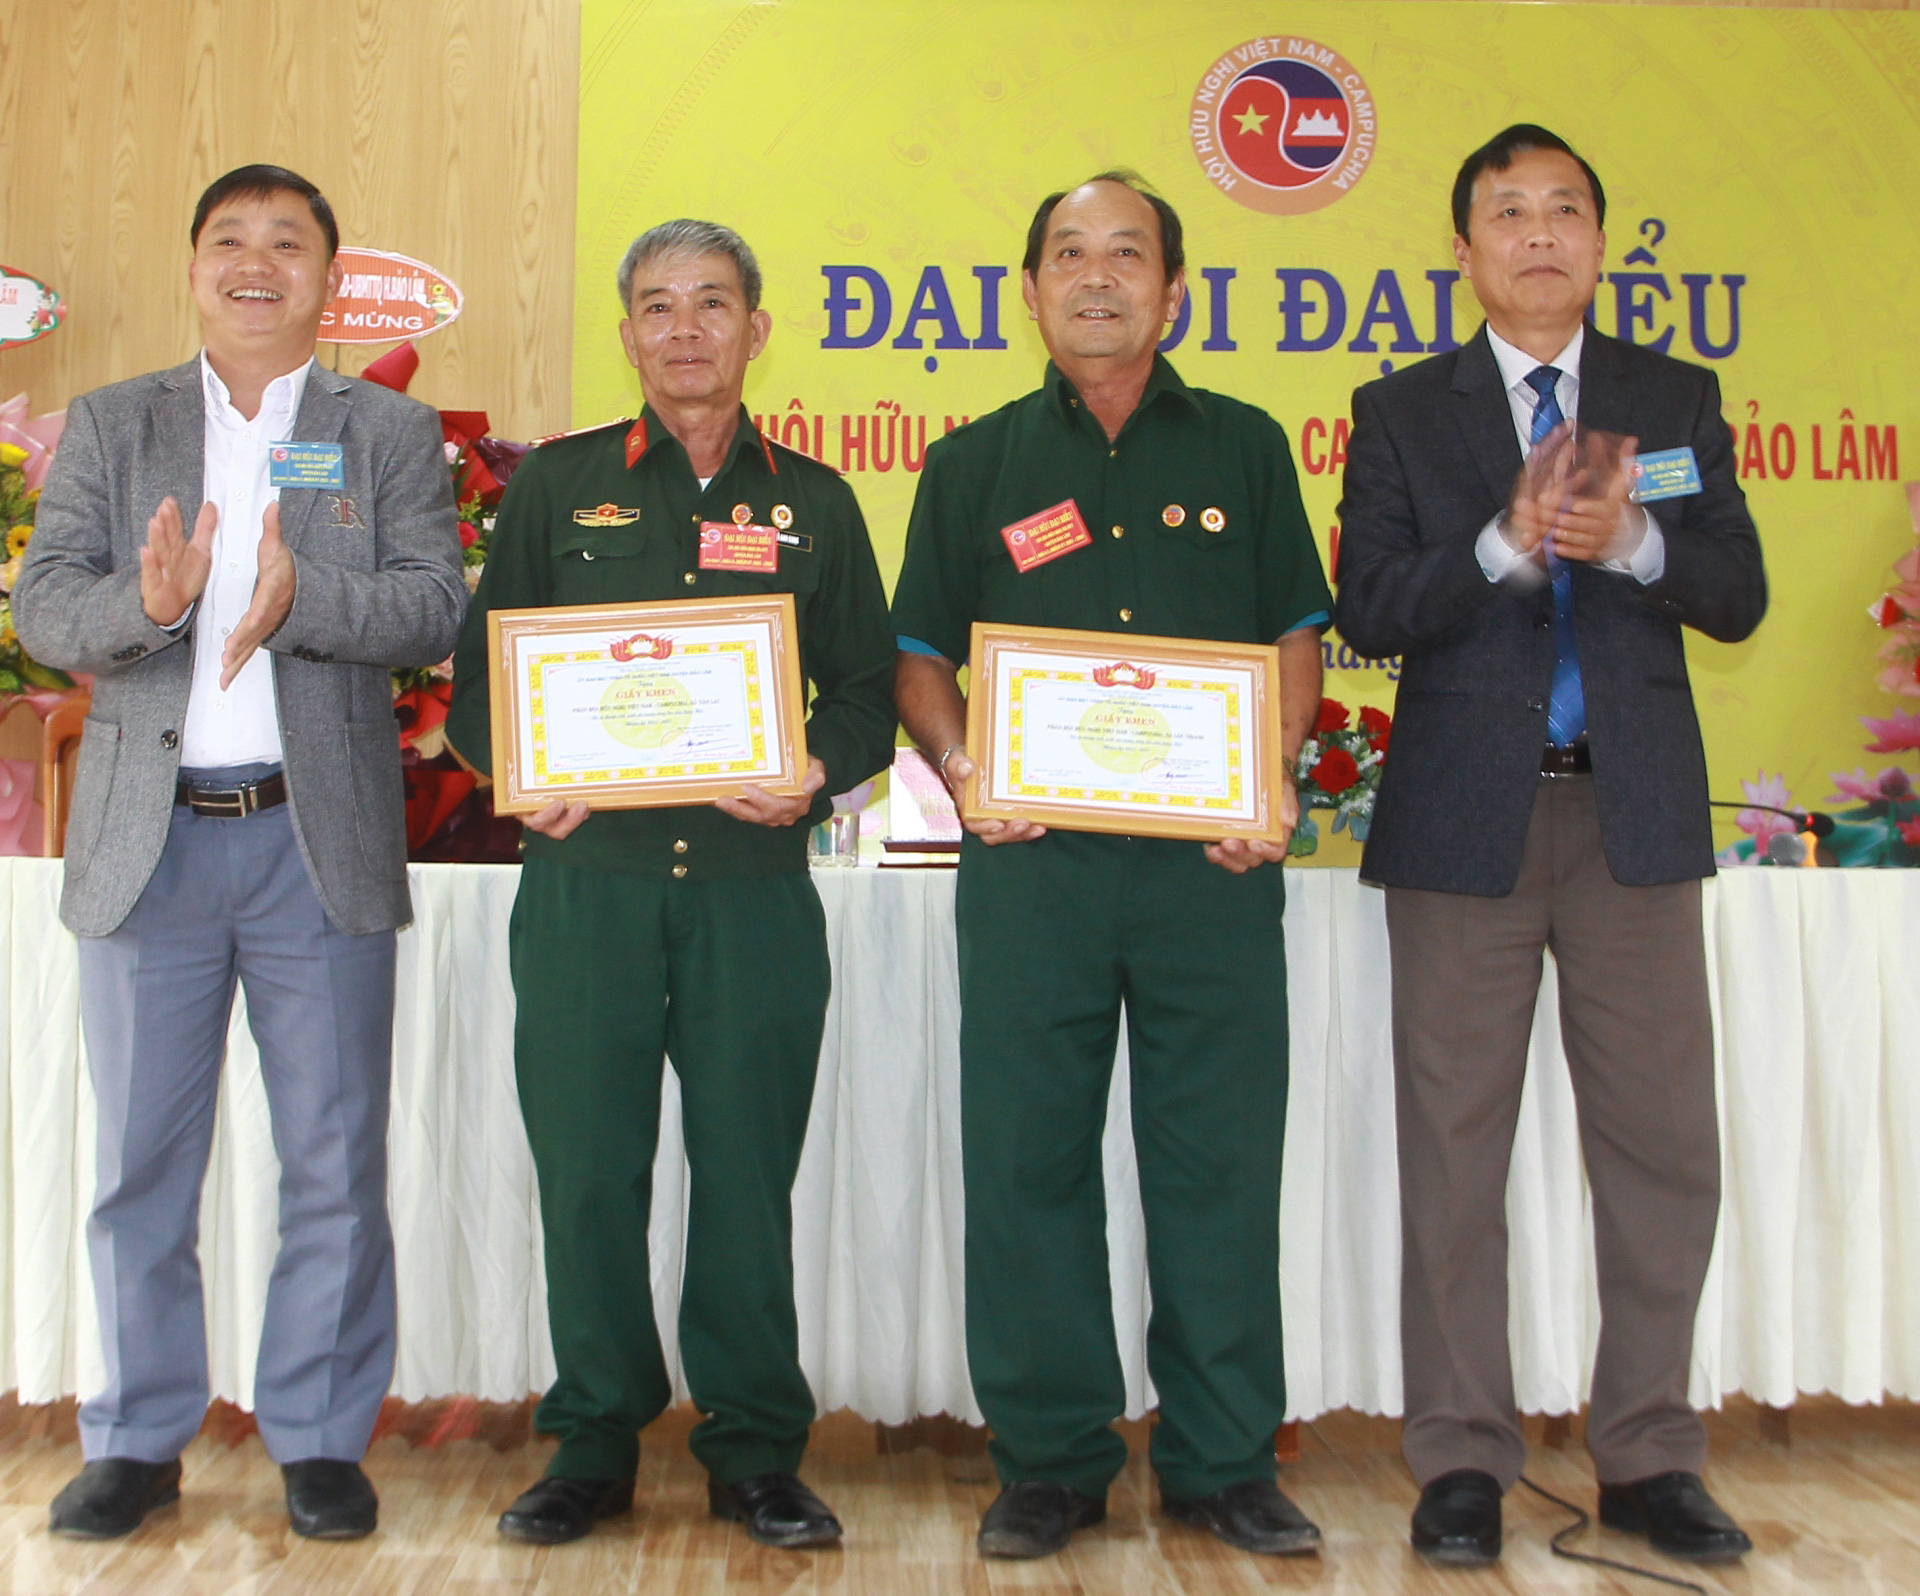 Lãnh đạo huyện Bảo Lâm trao giấy khen cho các cá nhân và tập thể